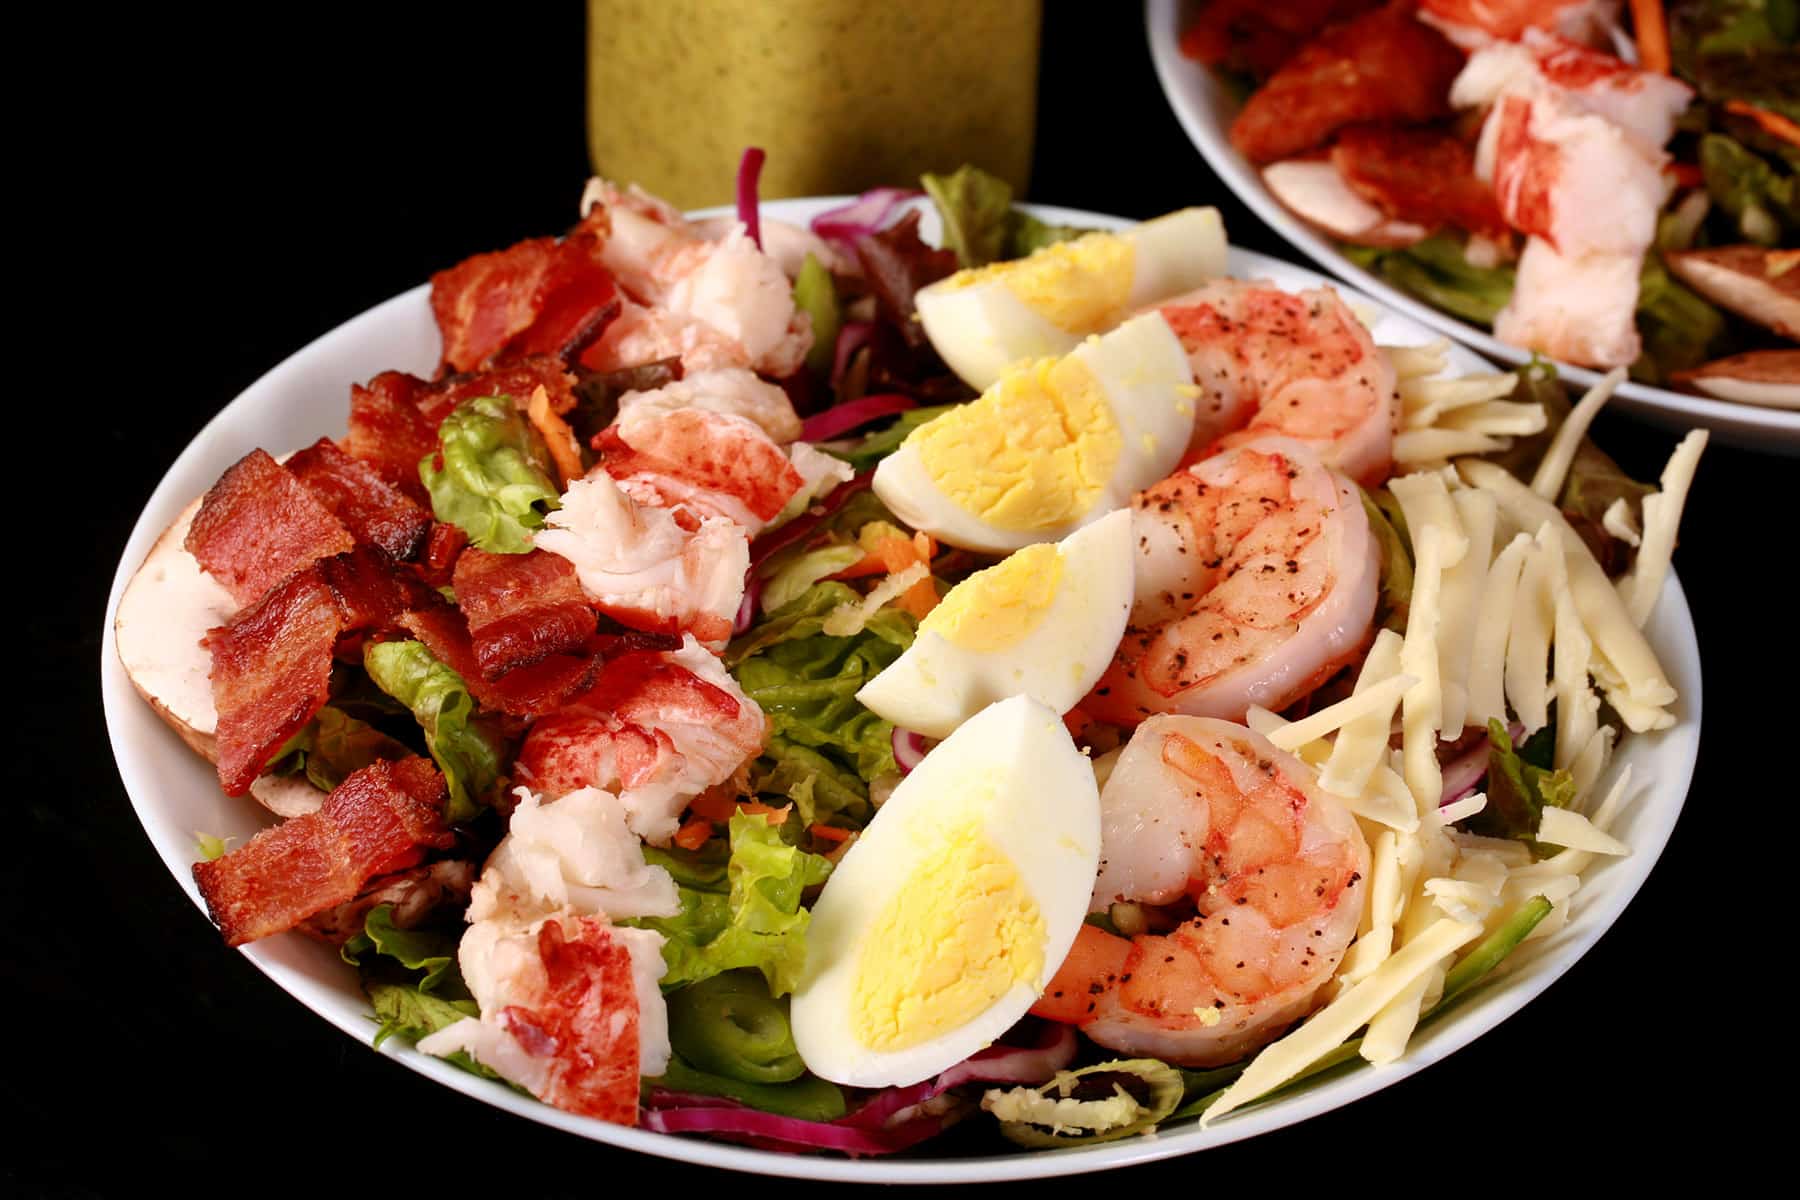 A seafood cobb salad with a bottle of lemon dill vinaigrette.